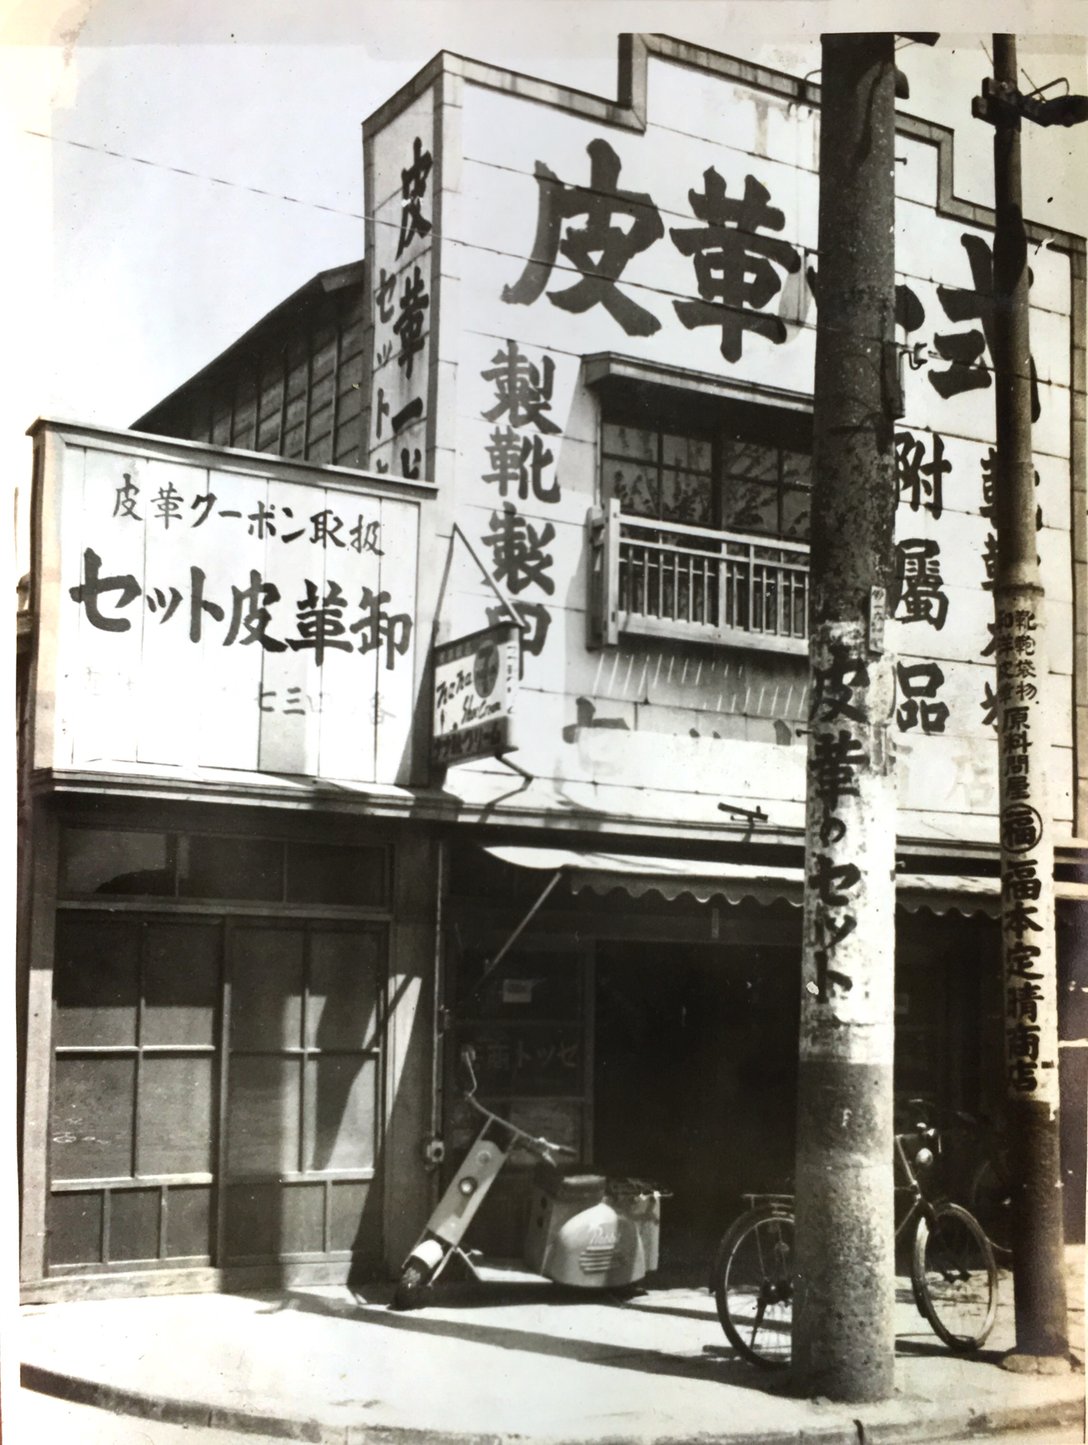 世界に誇る日本の革靴【第1回】 創業60年の老舗革靴メーカー「東立製靴 